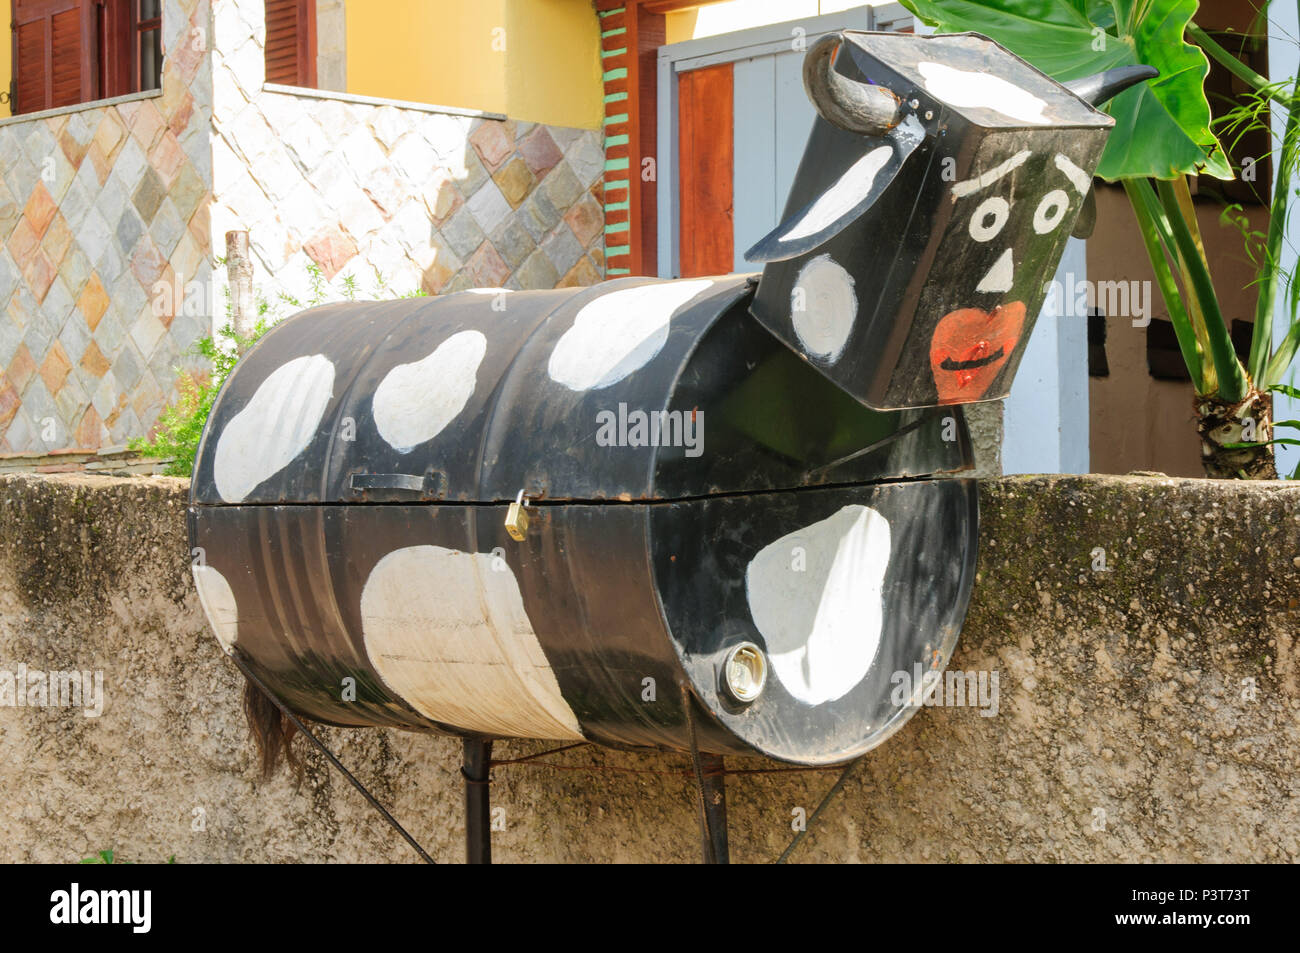 LAVRAS NOVAS, MG - 13.02.2016: Distrito de LAVRAS NOVAS - Vista de caixa de correio alusiva Uma vaca no Distrito de Lavras Novas, em Ouro Preto (MG). (Foto: Mourão Panda / Fotoarena) Foto Stock